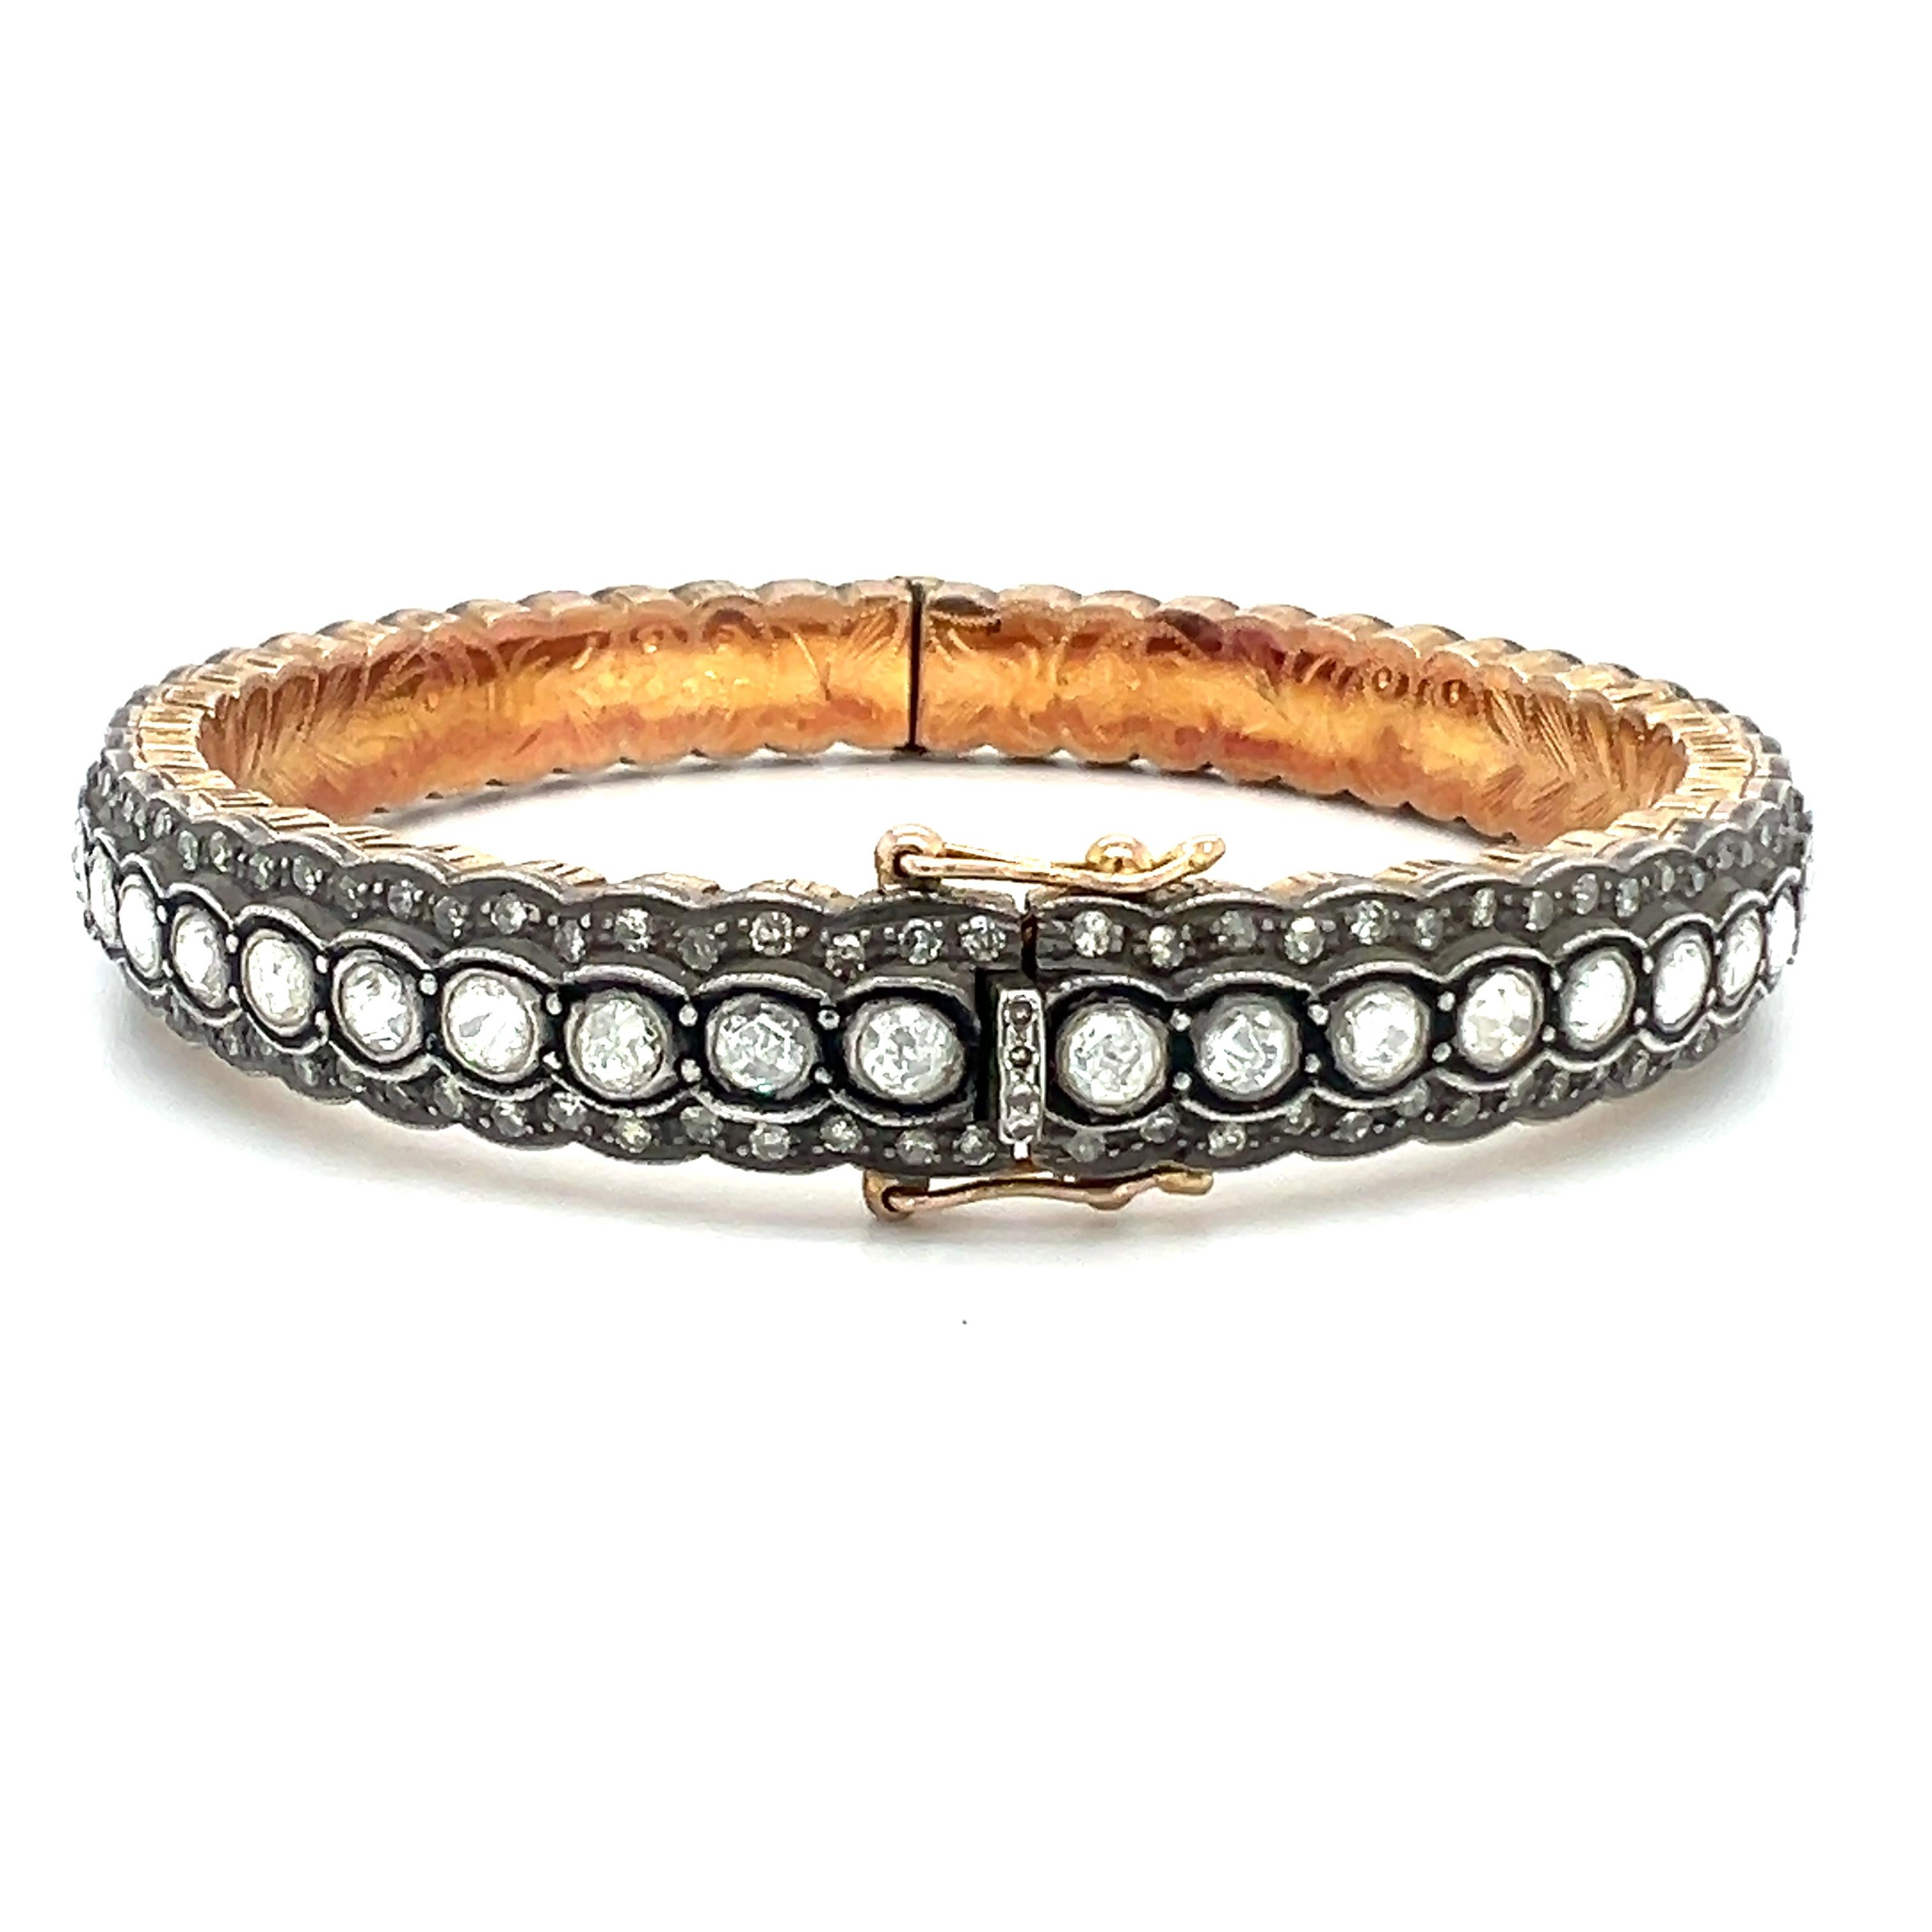 Un magnifique bracelet en argent massif serti de diamants naturels de 7,20 carats. 